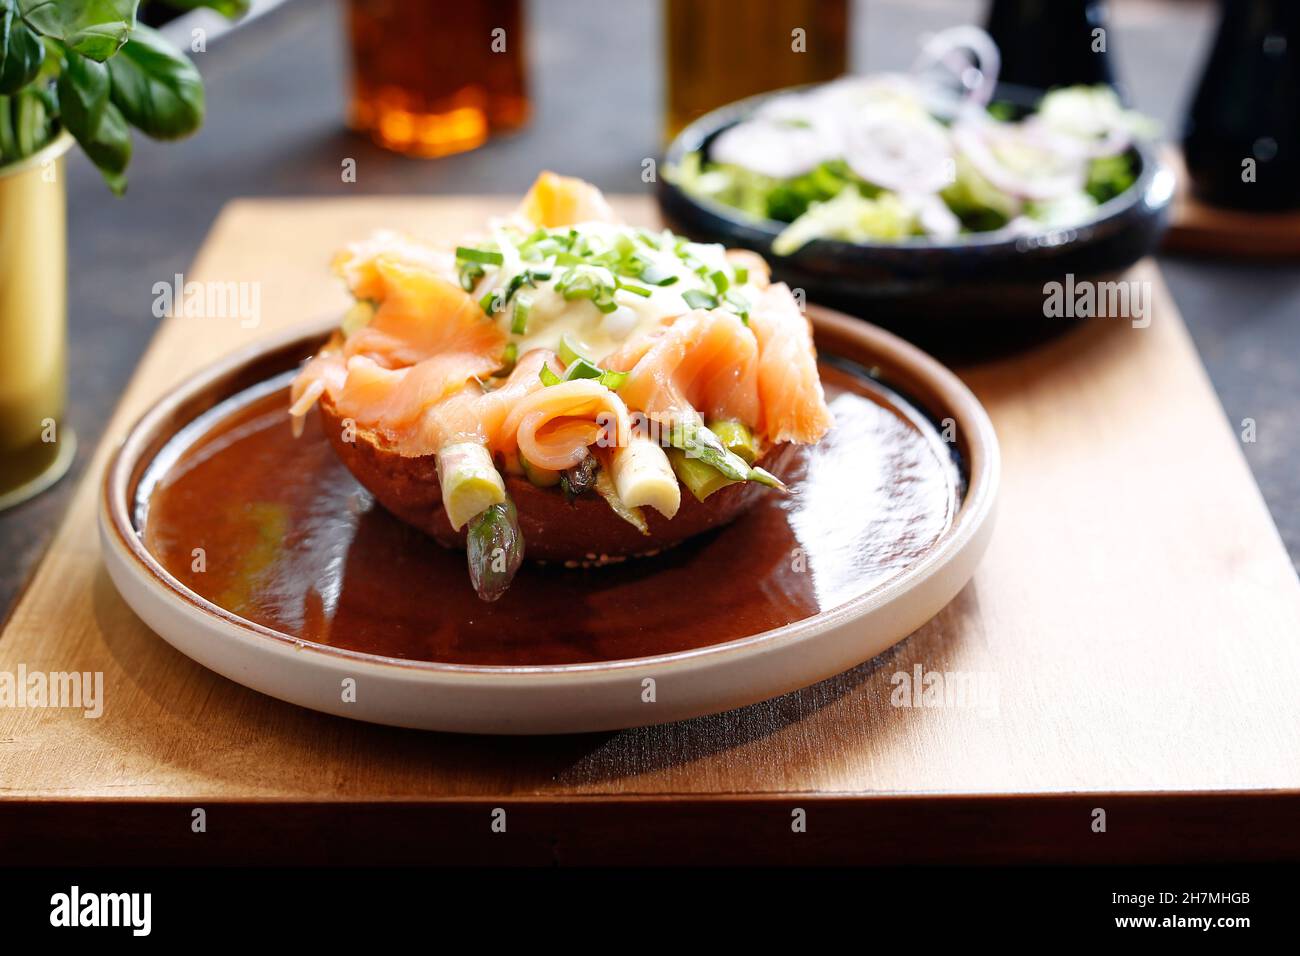 Sandwich au saumon fumé et aux asperges, servi avec une salade verte.Un délicieux plat.photographie culinaire.Suggestion de servir le plat. Banque D'Images